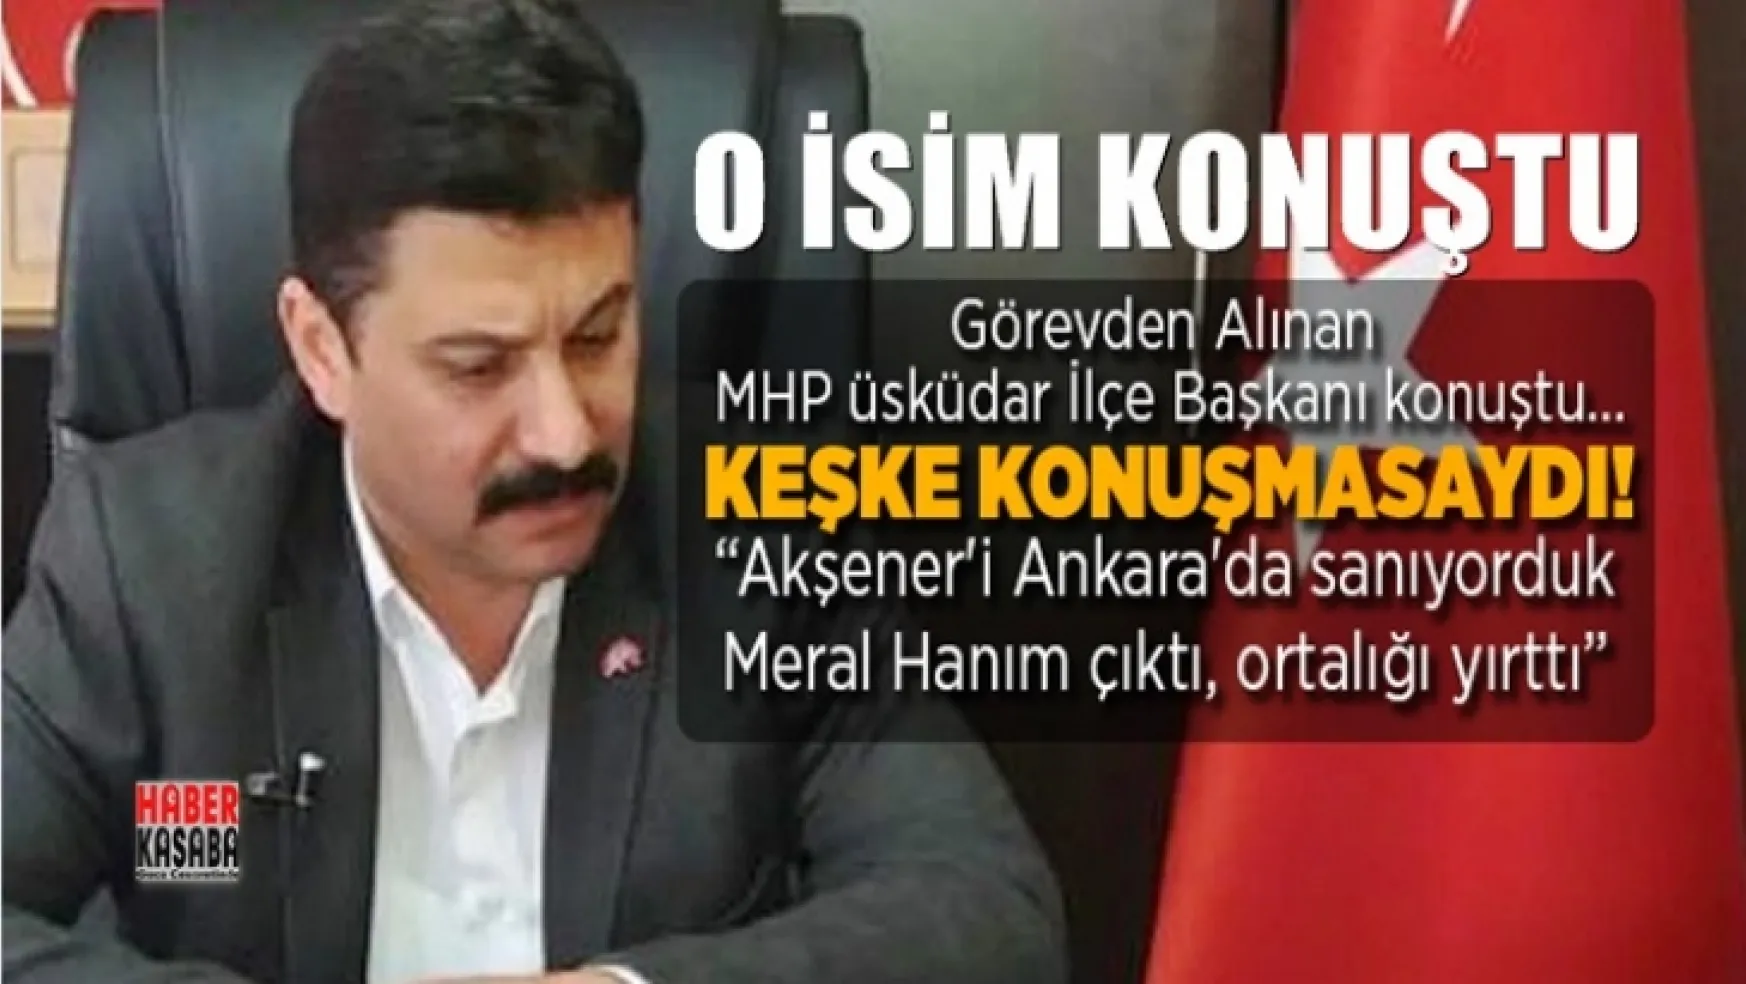 Görevden Alınan MHP'li Üsküdar İlçe Başkanı konuştu: 'Akşener'i Ankara'da sanıyorduk Meral Hanım çıktı, ortalığı yırttı'